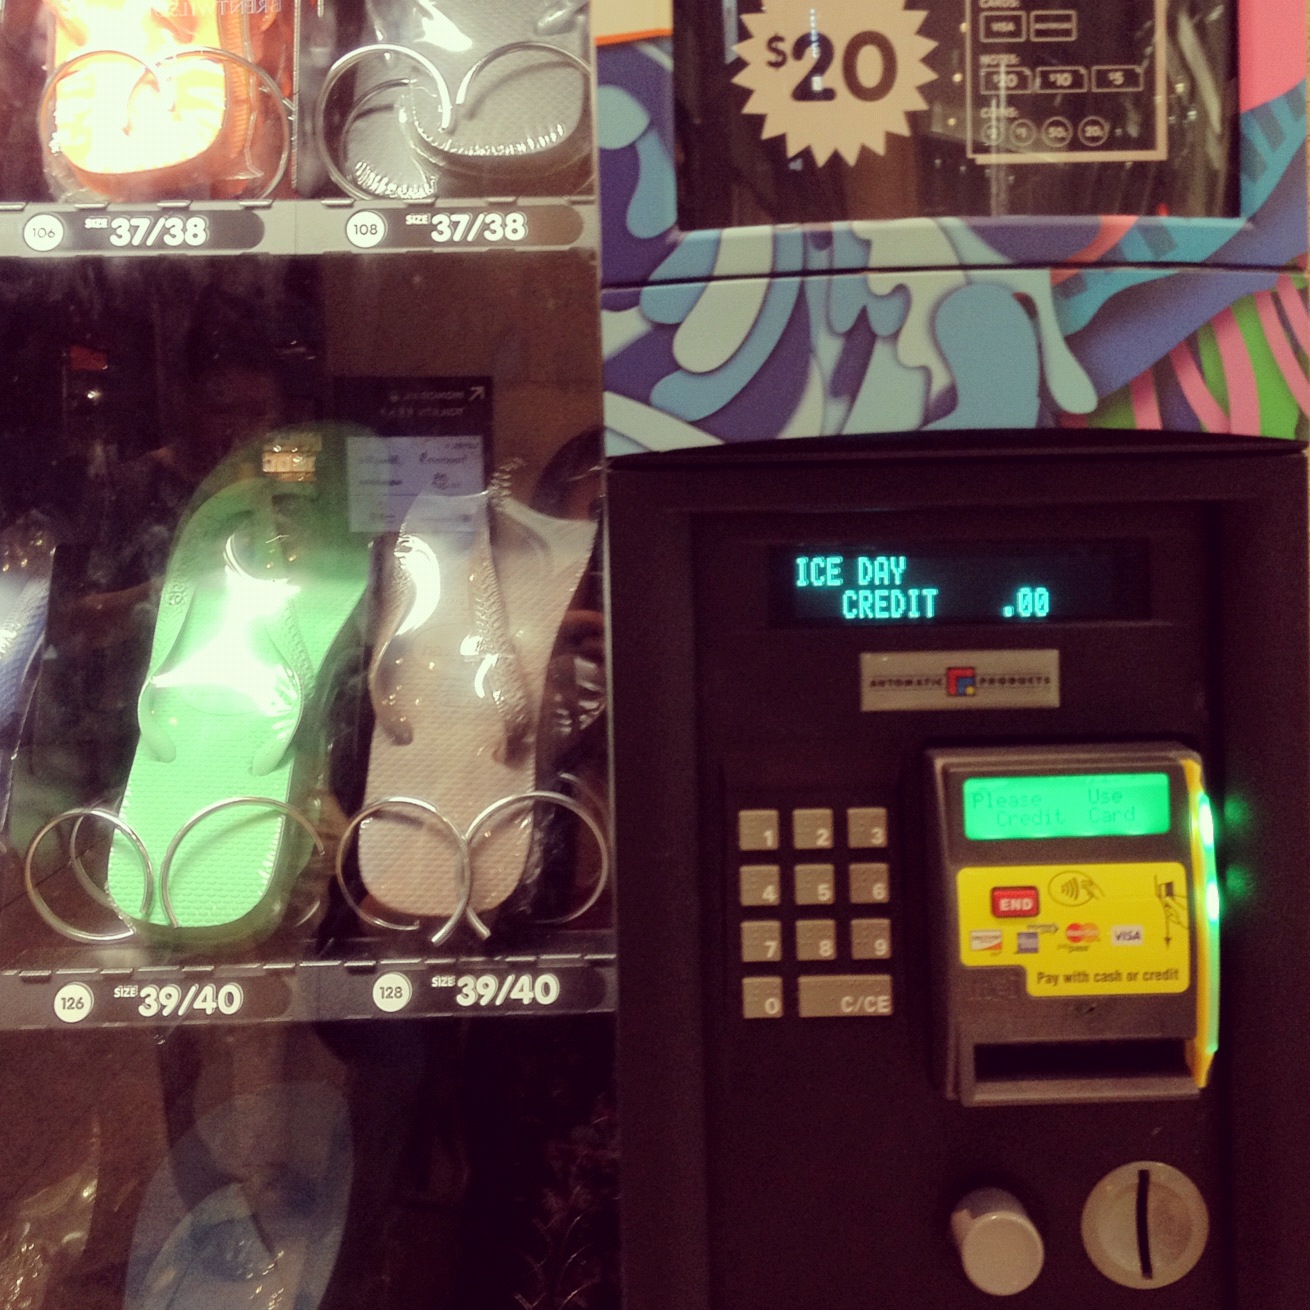 havaiana vending machine